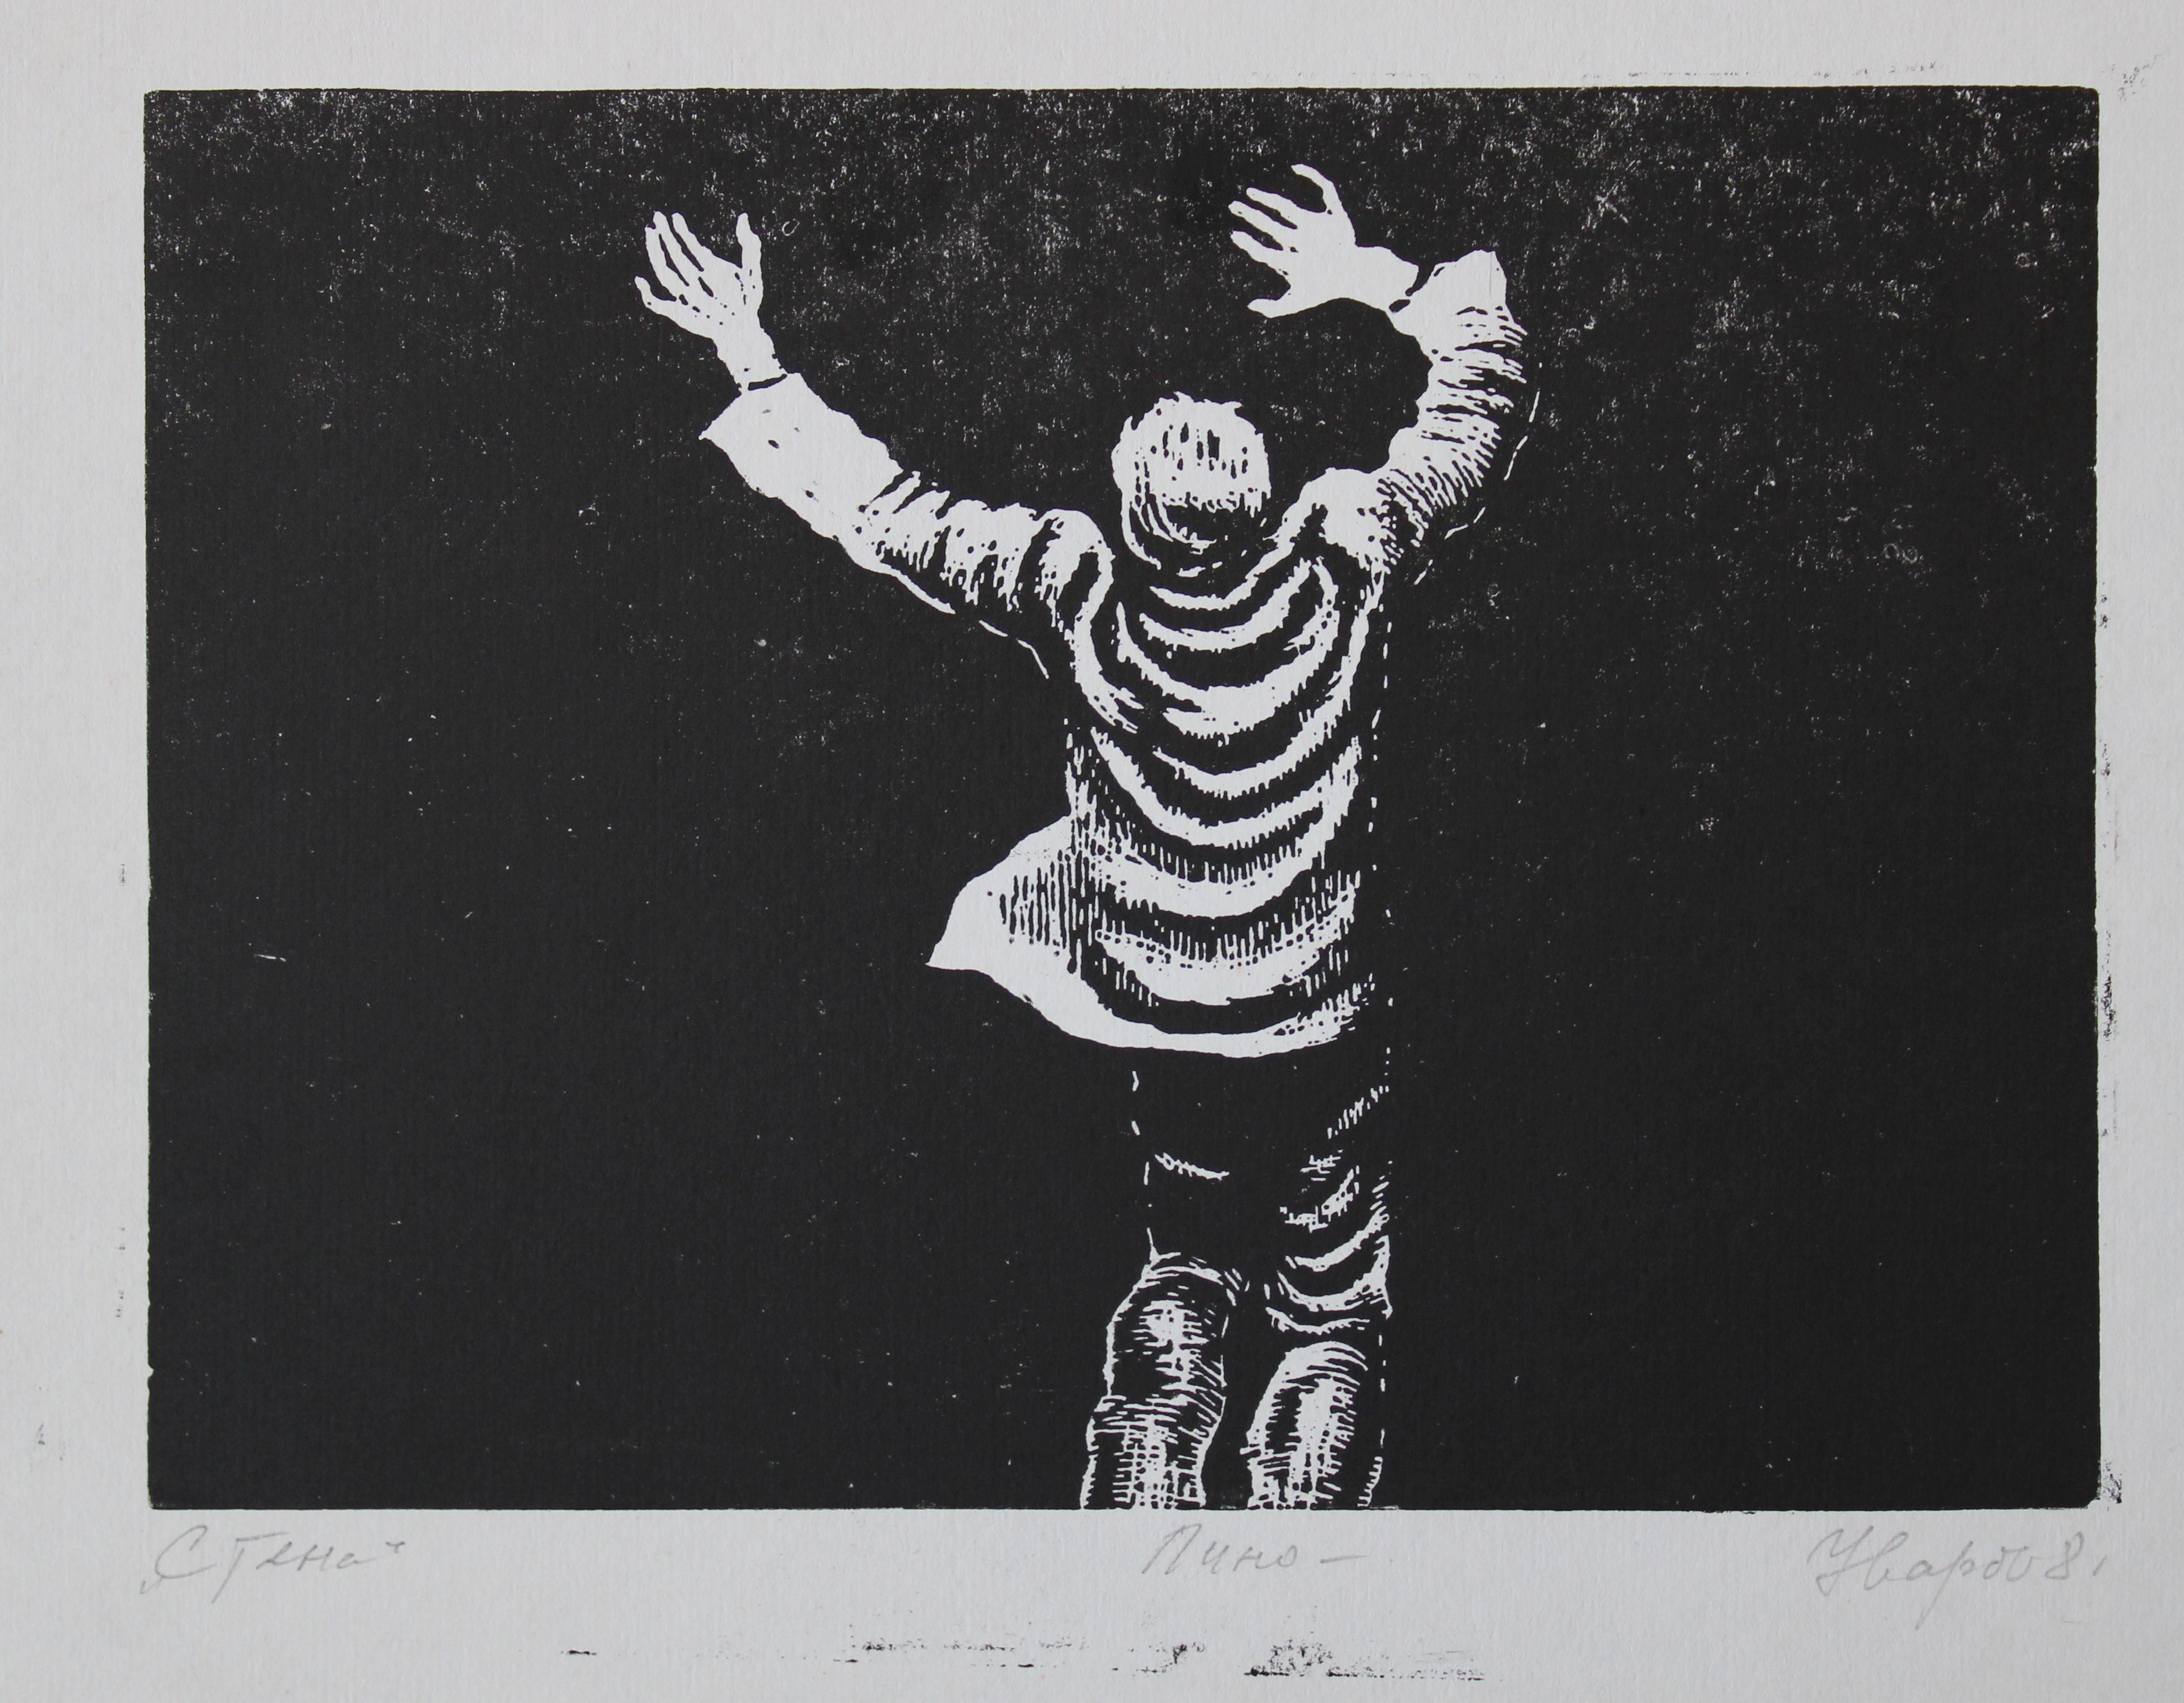 Mur

1968, papier, linogravure, 20,5 x28 cm

La linogravure représente un garçon debout dans ce qui semble être un environnement sombre ou ombragé. L'artiste utilise la technique de la linogravure pour créer des lignes et des textures audacieuses